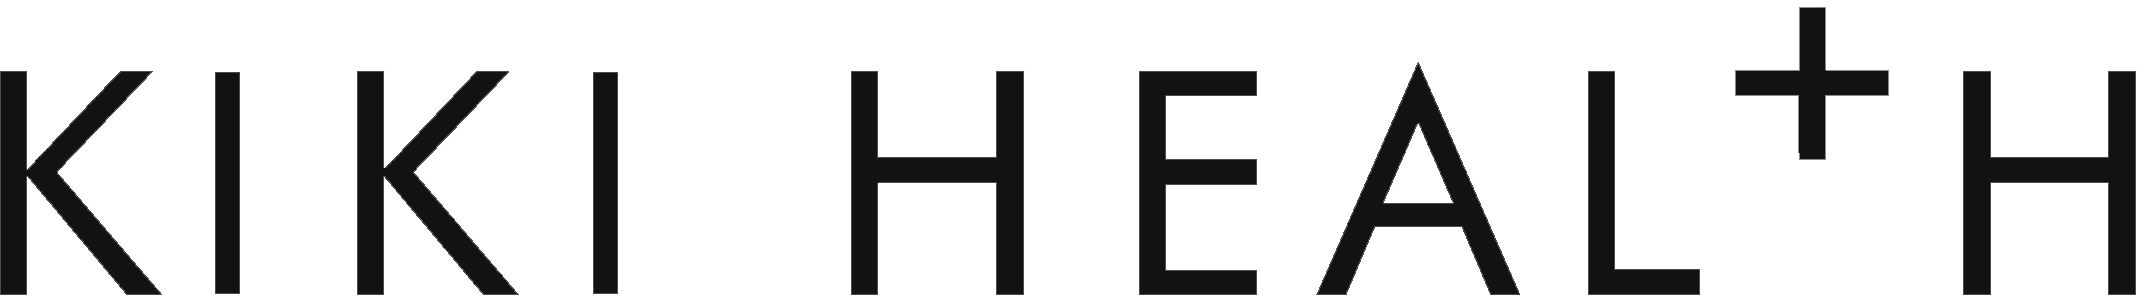 Kiki health logo